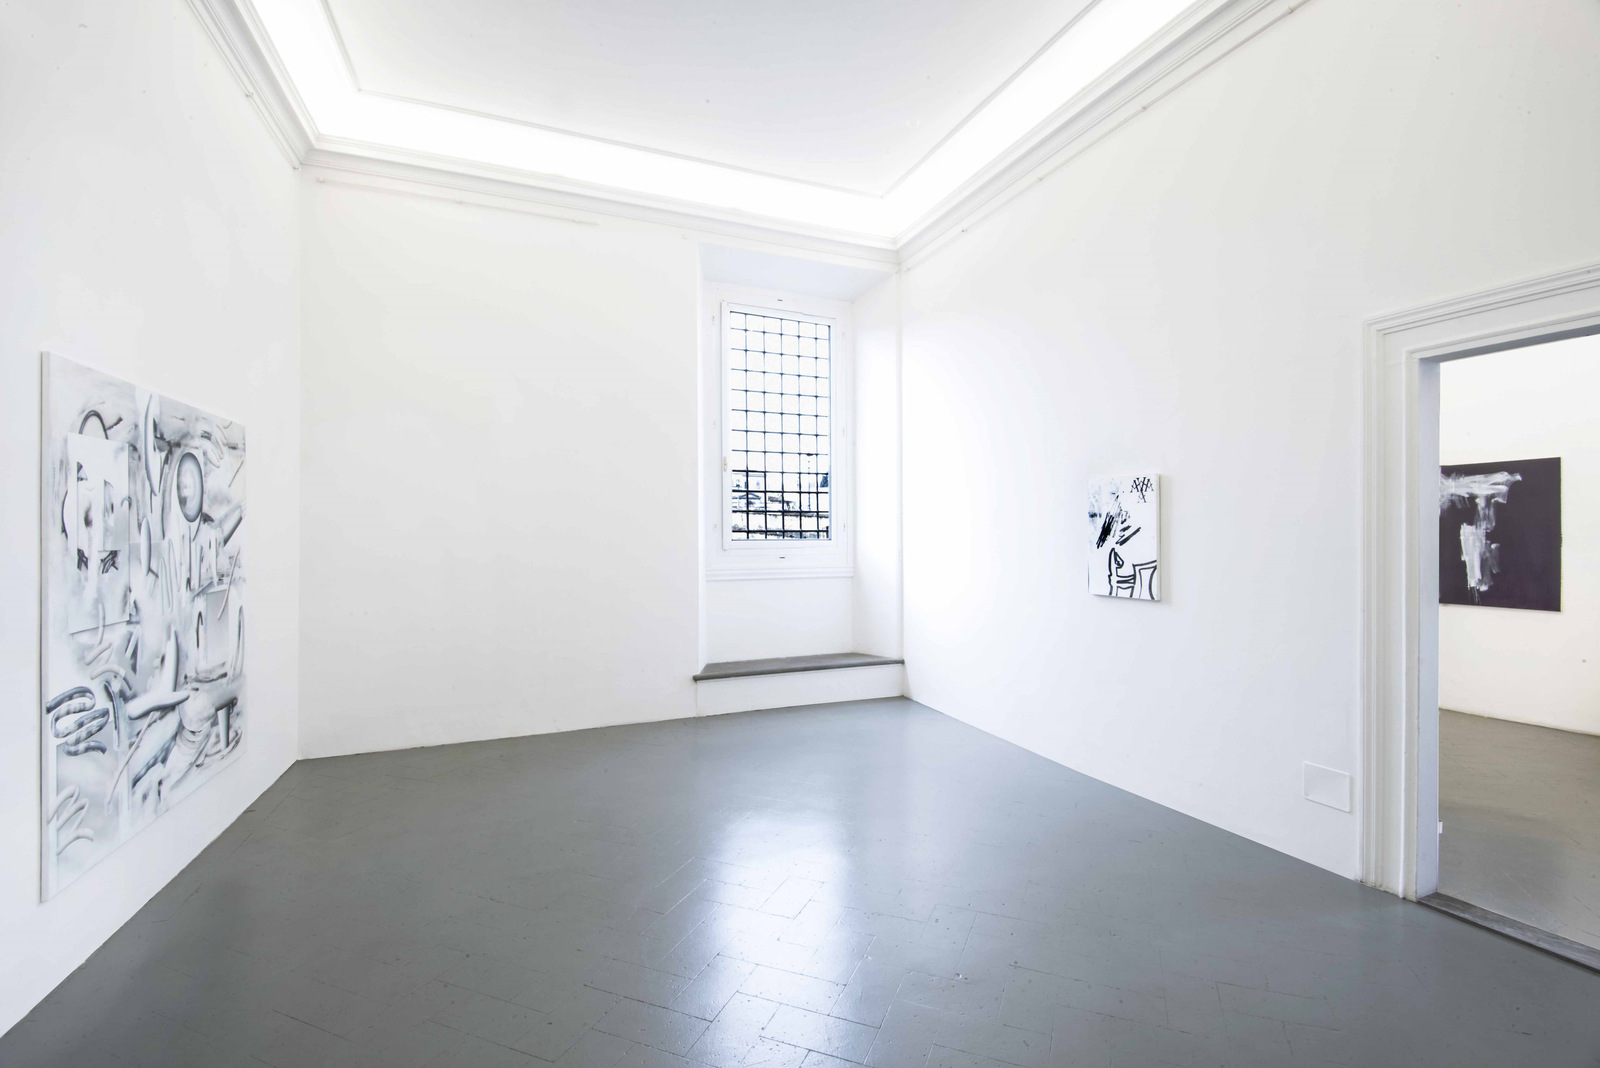 2.Installation View, Michael Debatty, Sofia Leiby, Alexander Lieck. Courtesy of Eduardo Secci Contemporary